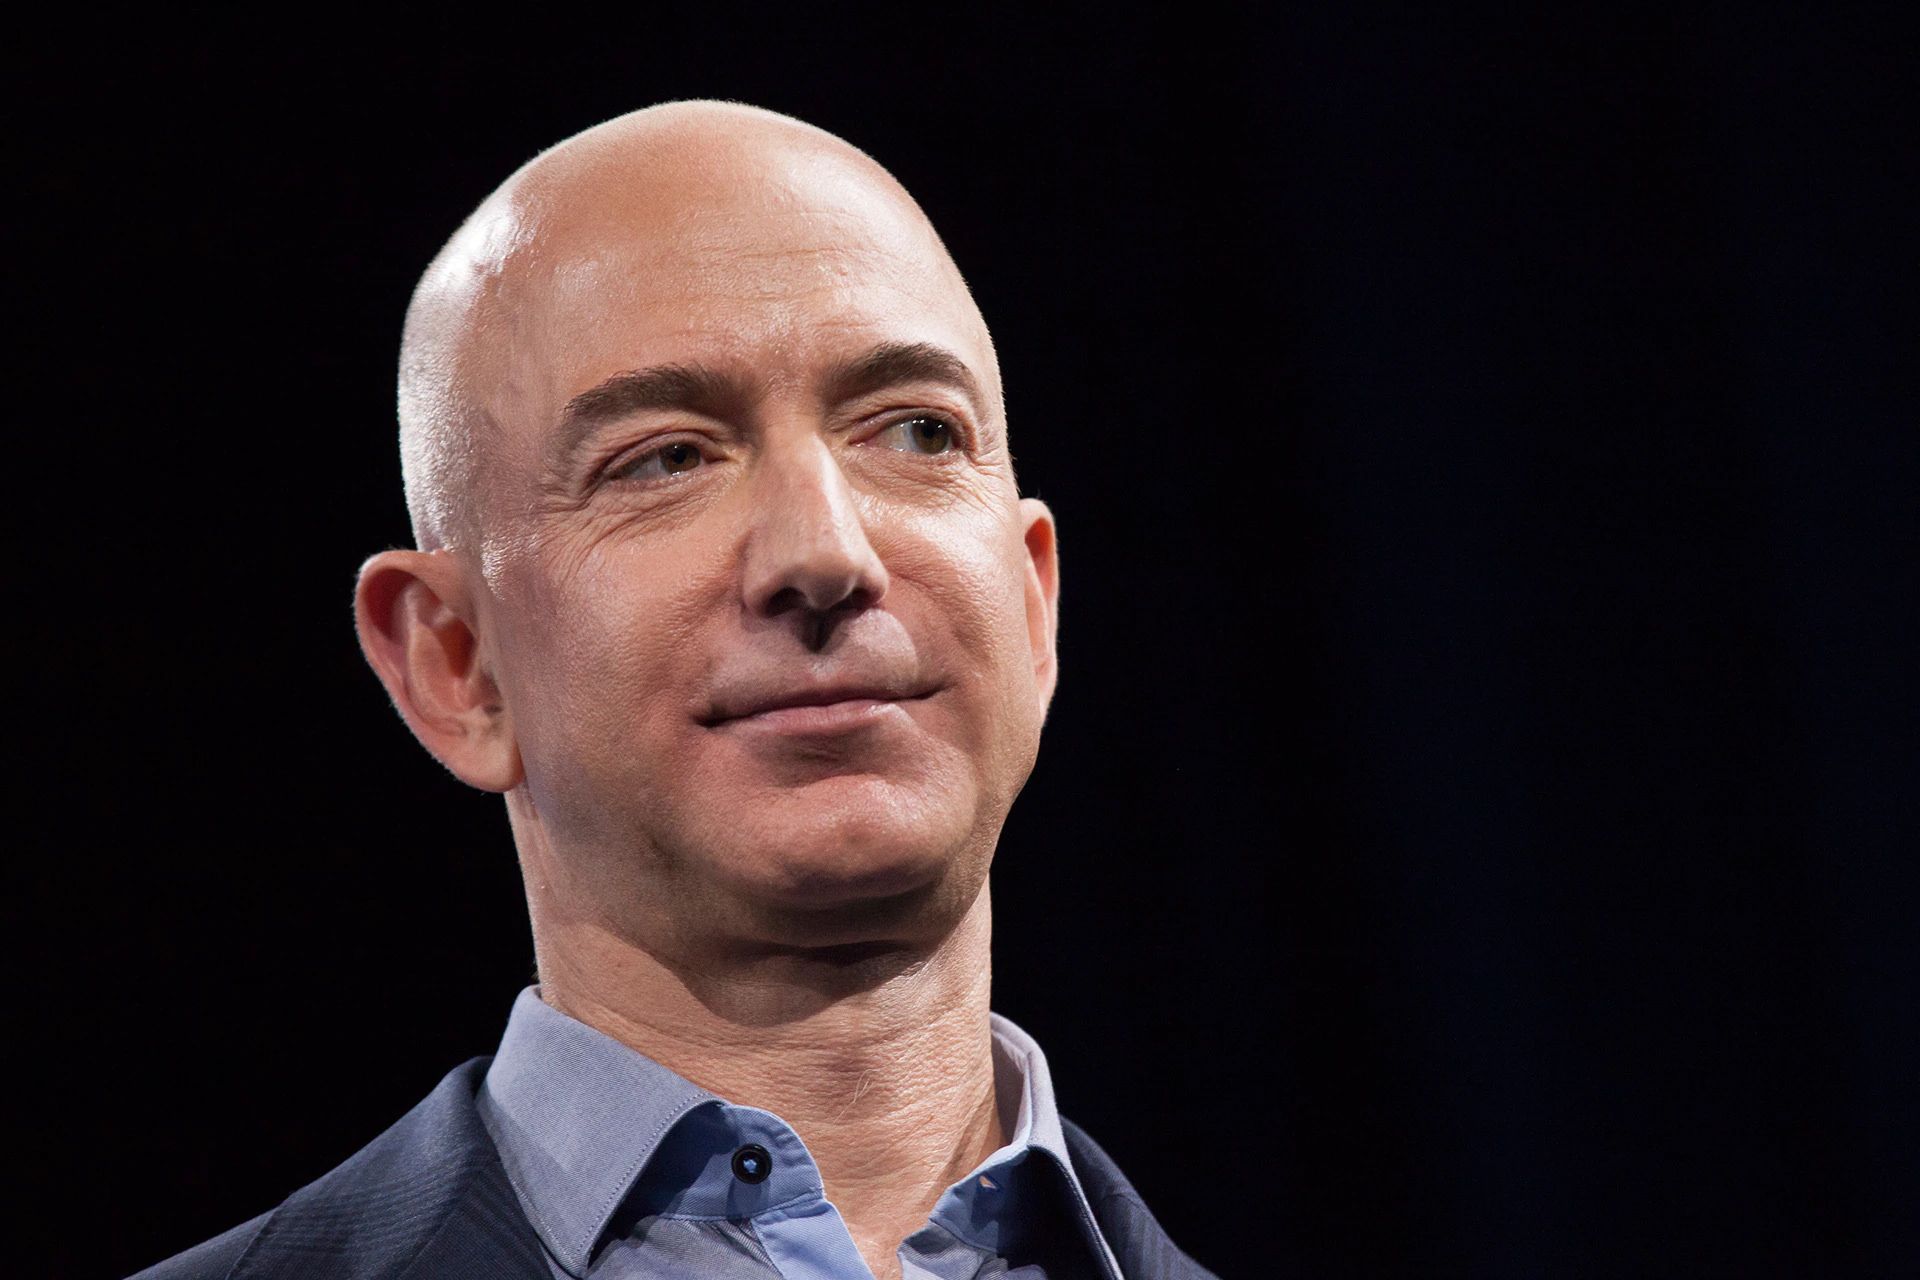 نمای نزدیک چهره جف بیزوس / Jeff Bezos بنیان گذار آمازون / Amazon